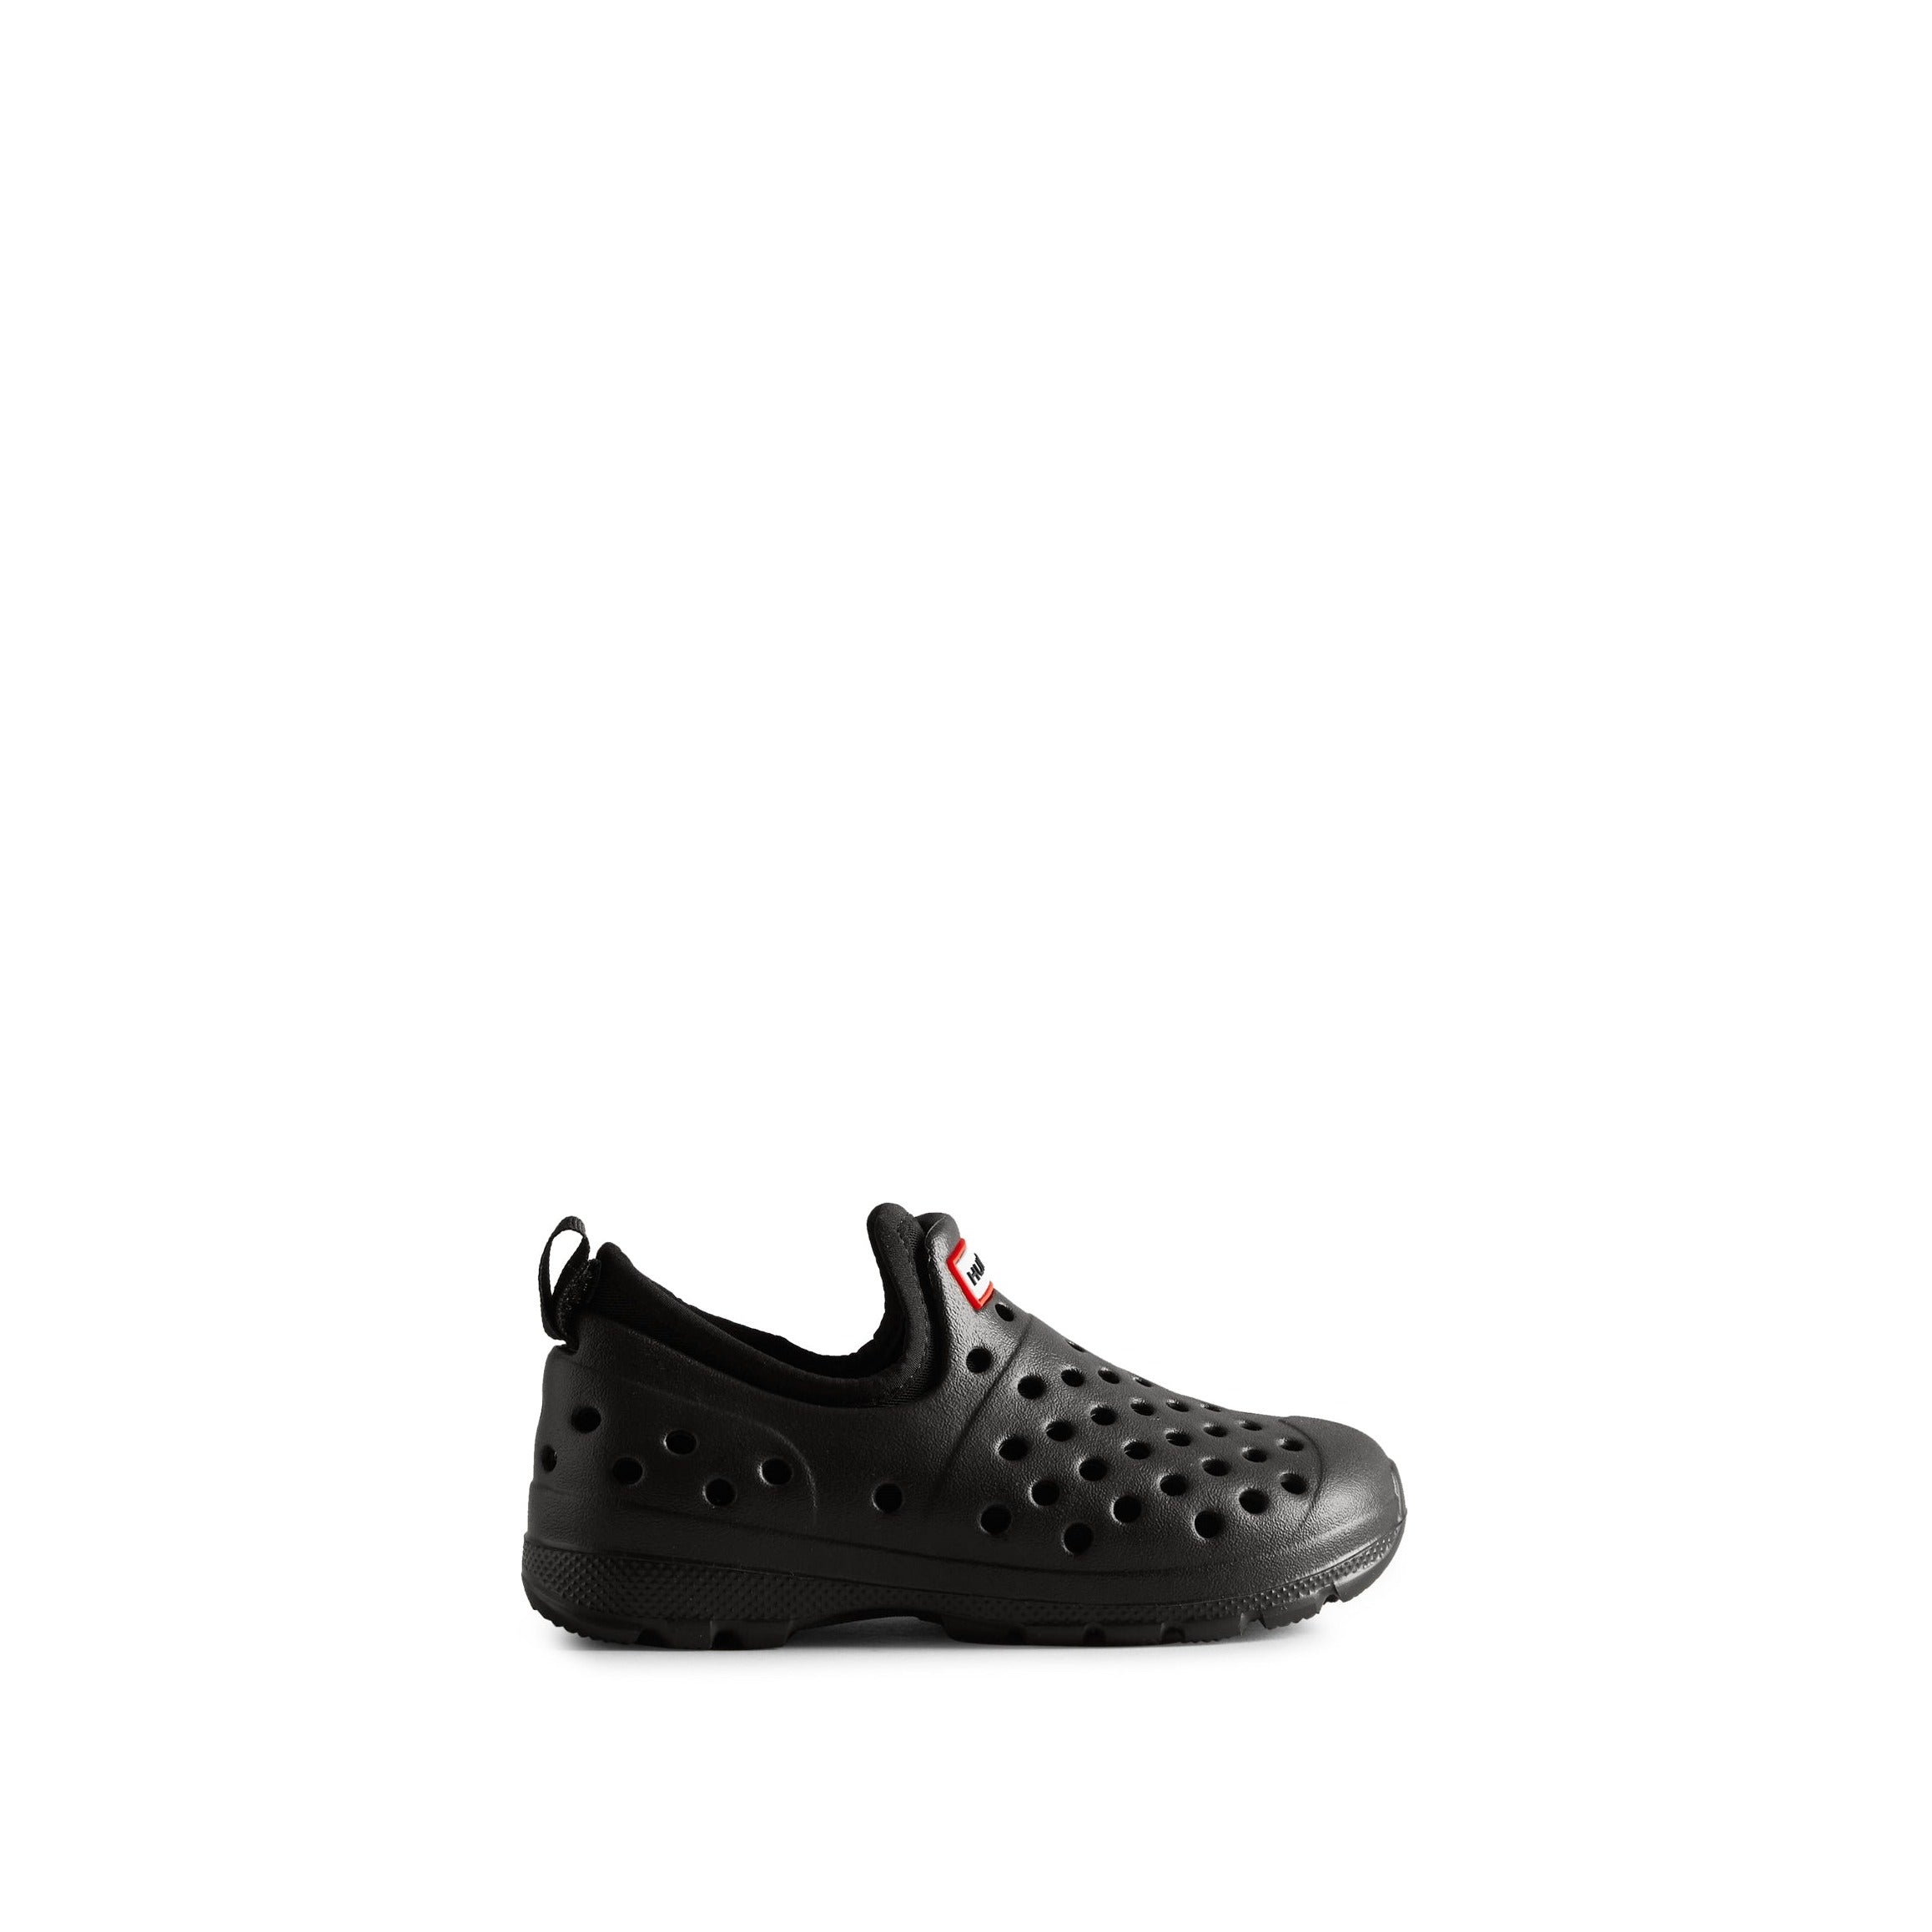 Sample UGG Little Kids Water Shoe Sandal Black 9 